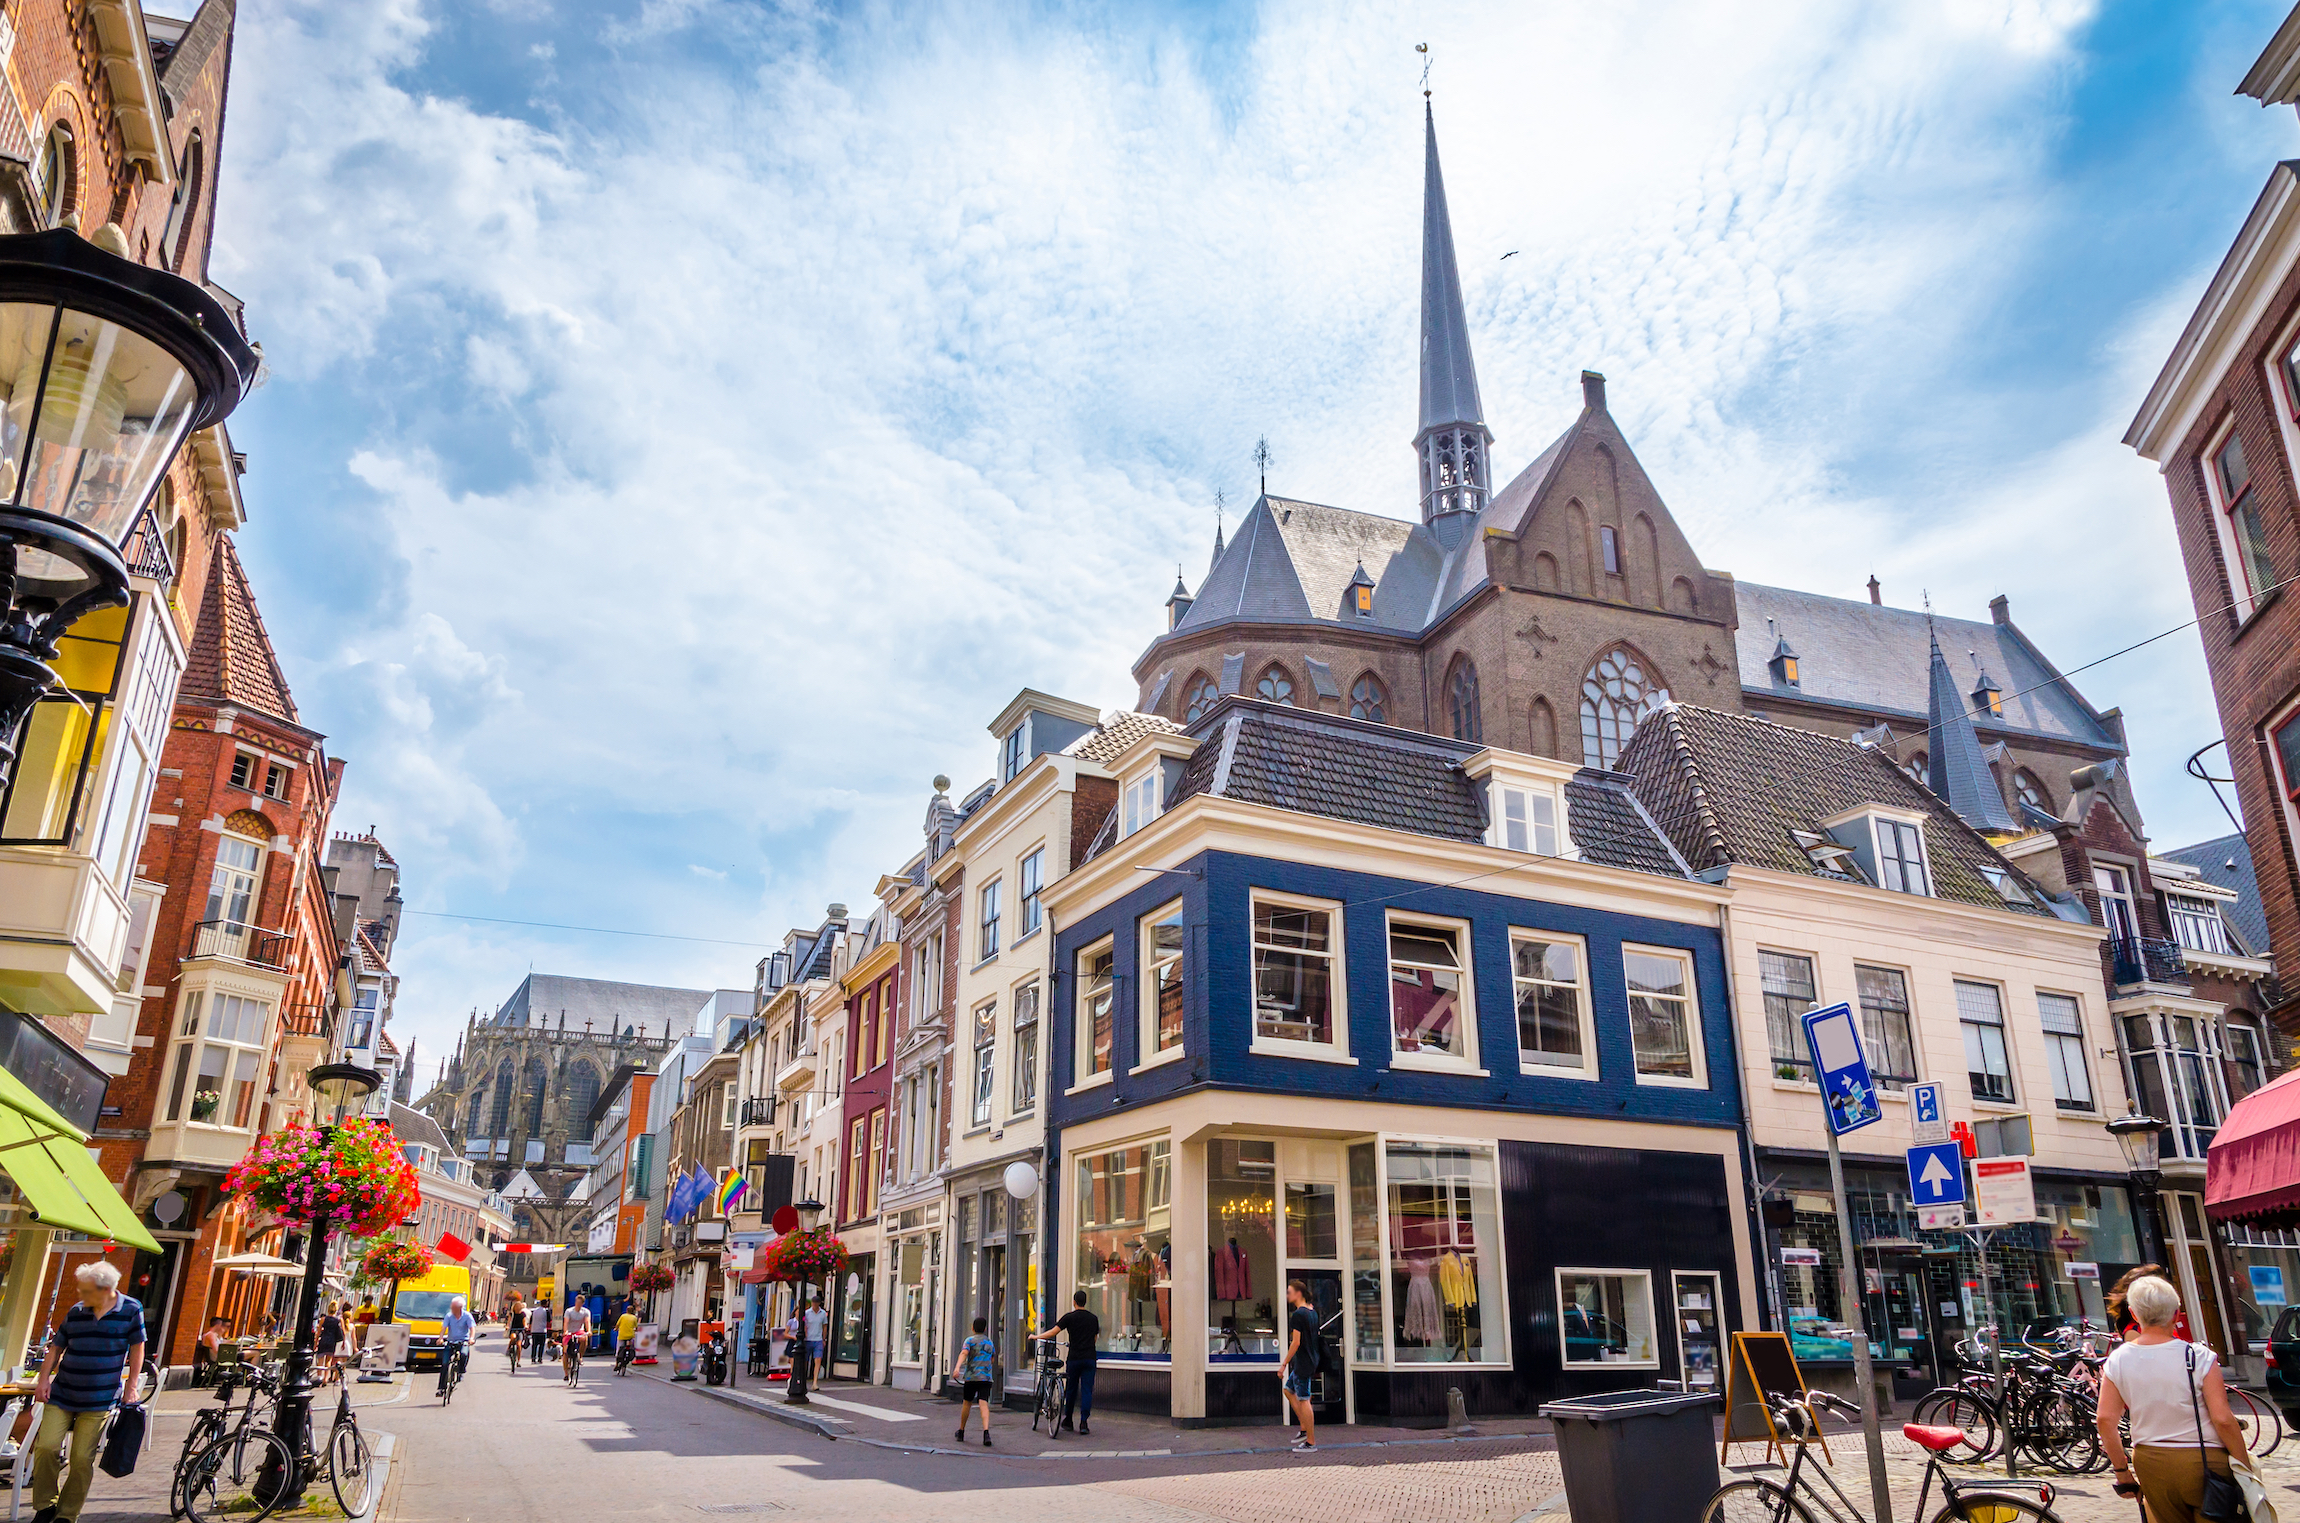 Tradycyjna stara ulica i budynki w Utrechcie, Holandia.